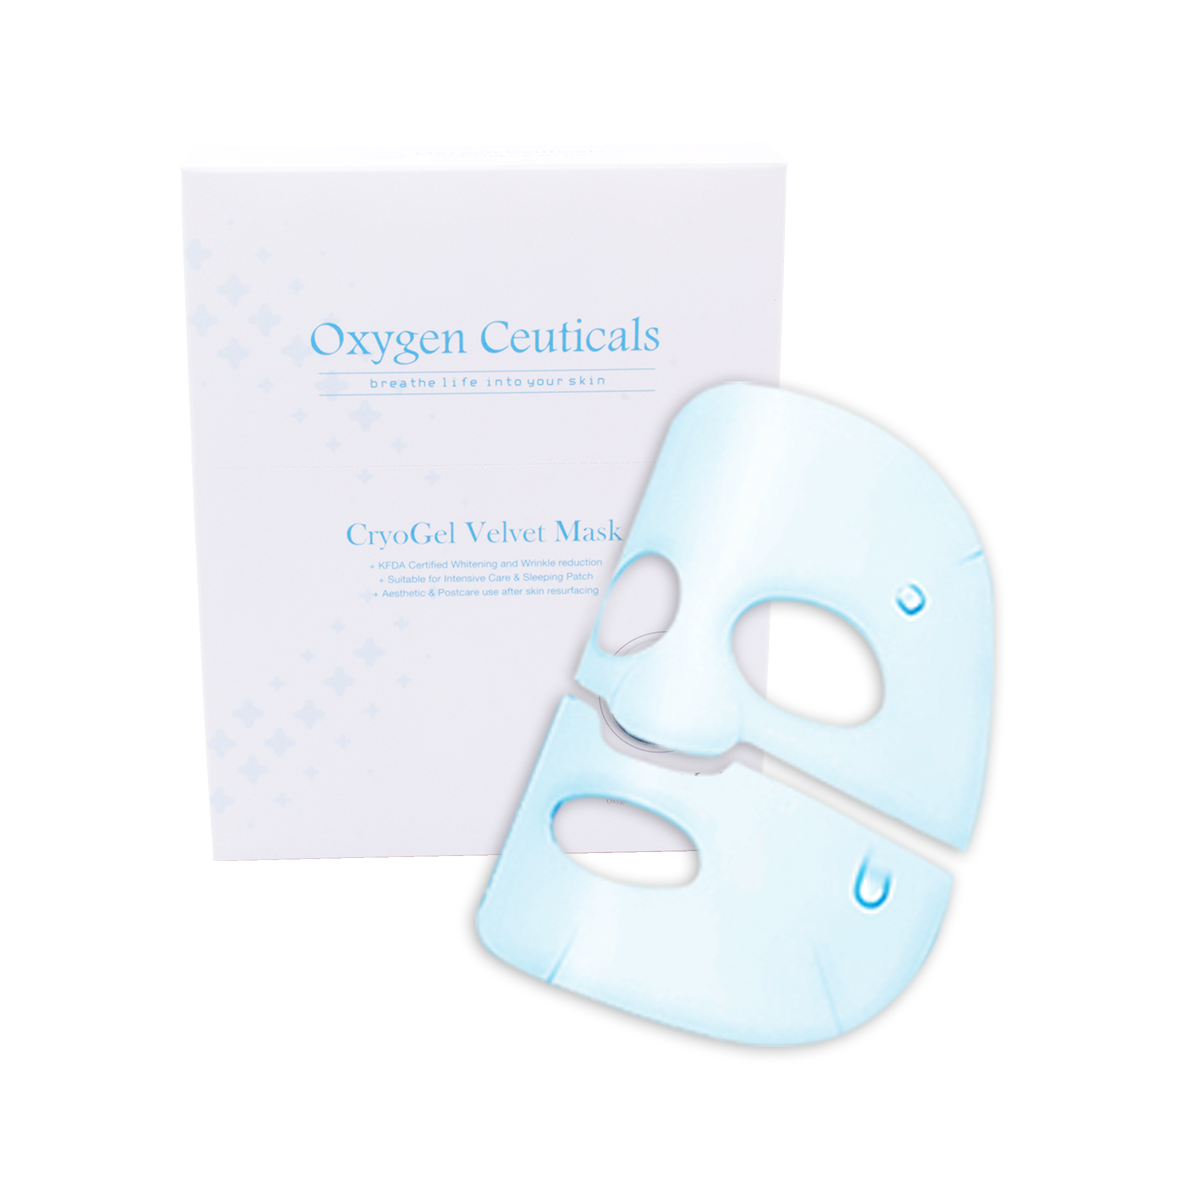 CryoGel Velvet Mask